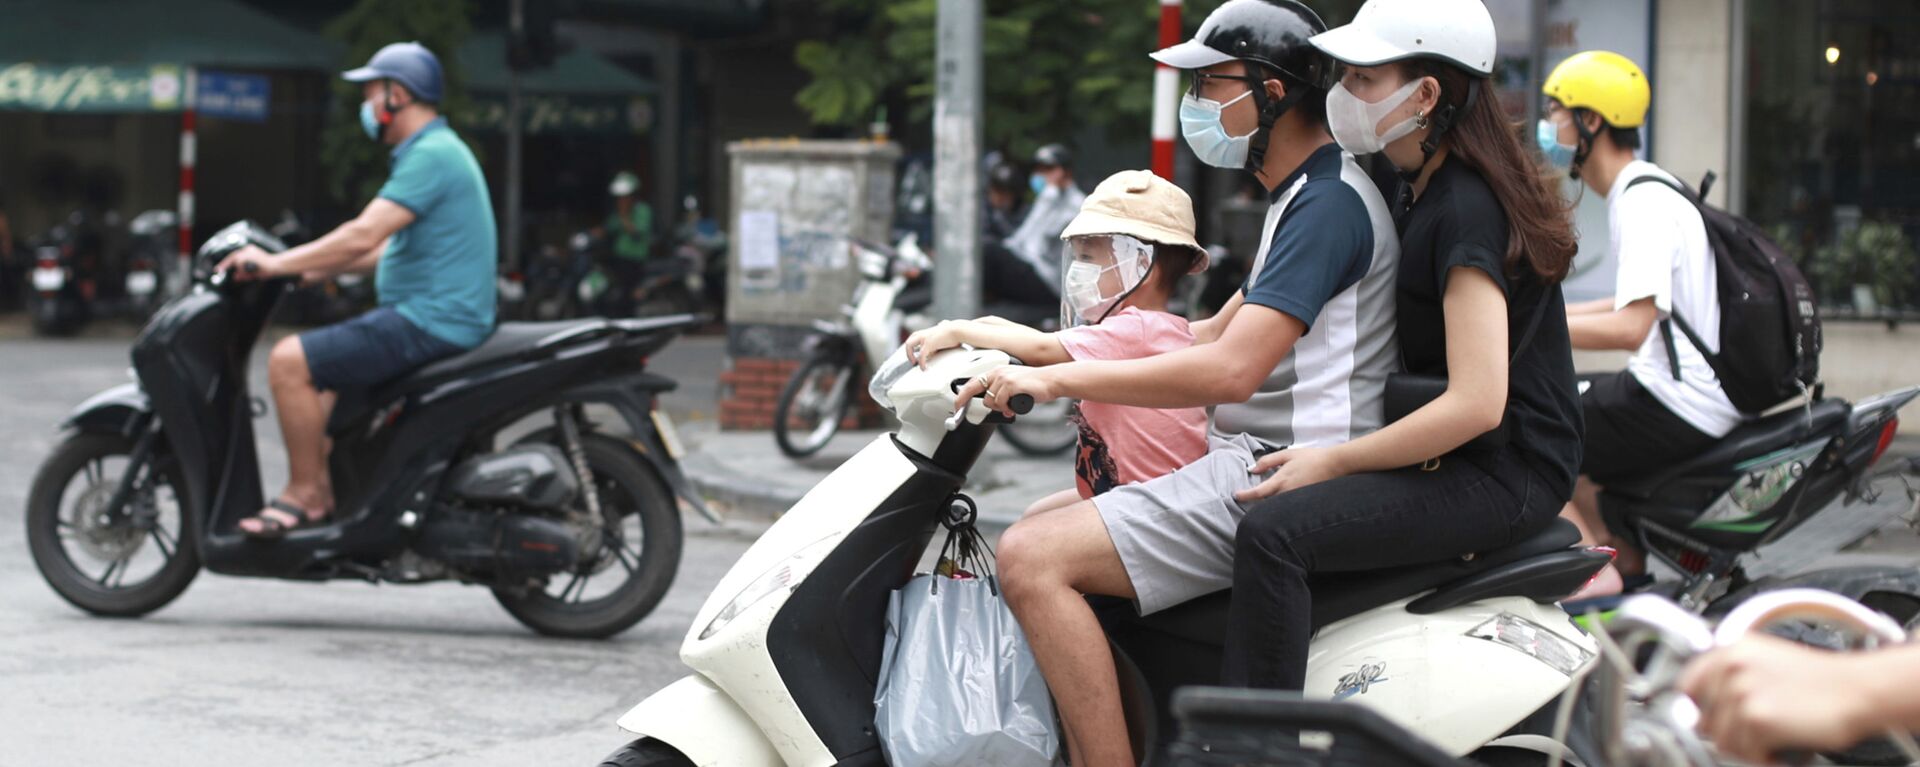 Cặp đôi đeo khẩu trang y tế đi xe máy ở Hà Nội, Việt Nam - Sputnik Việt Nam, 1920, 25.11.2020